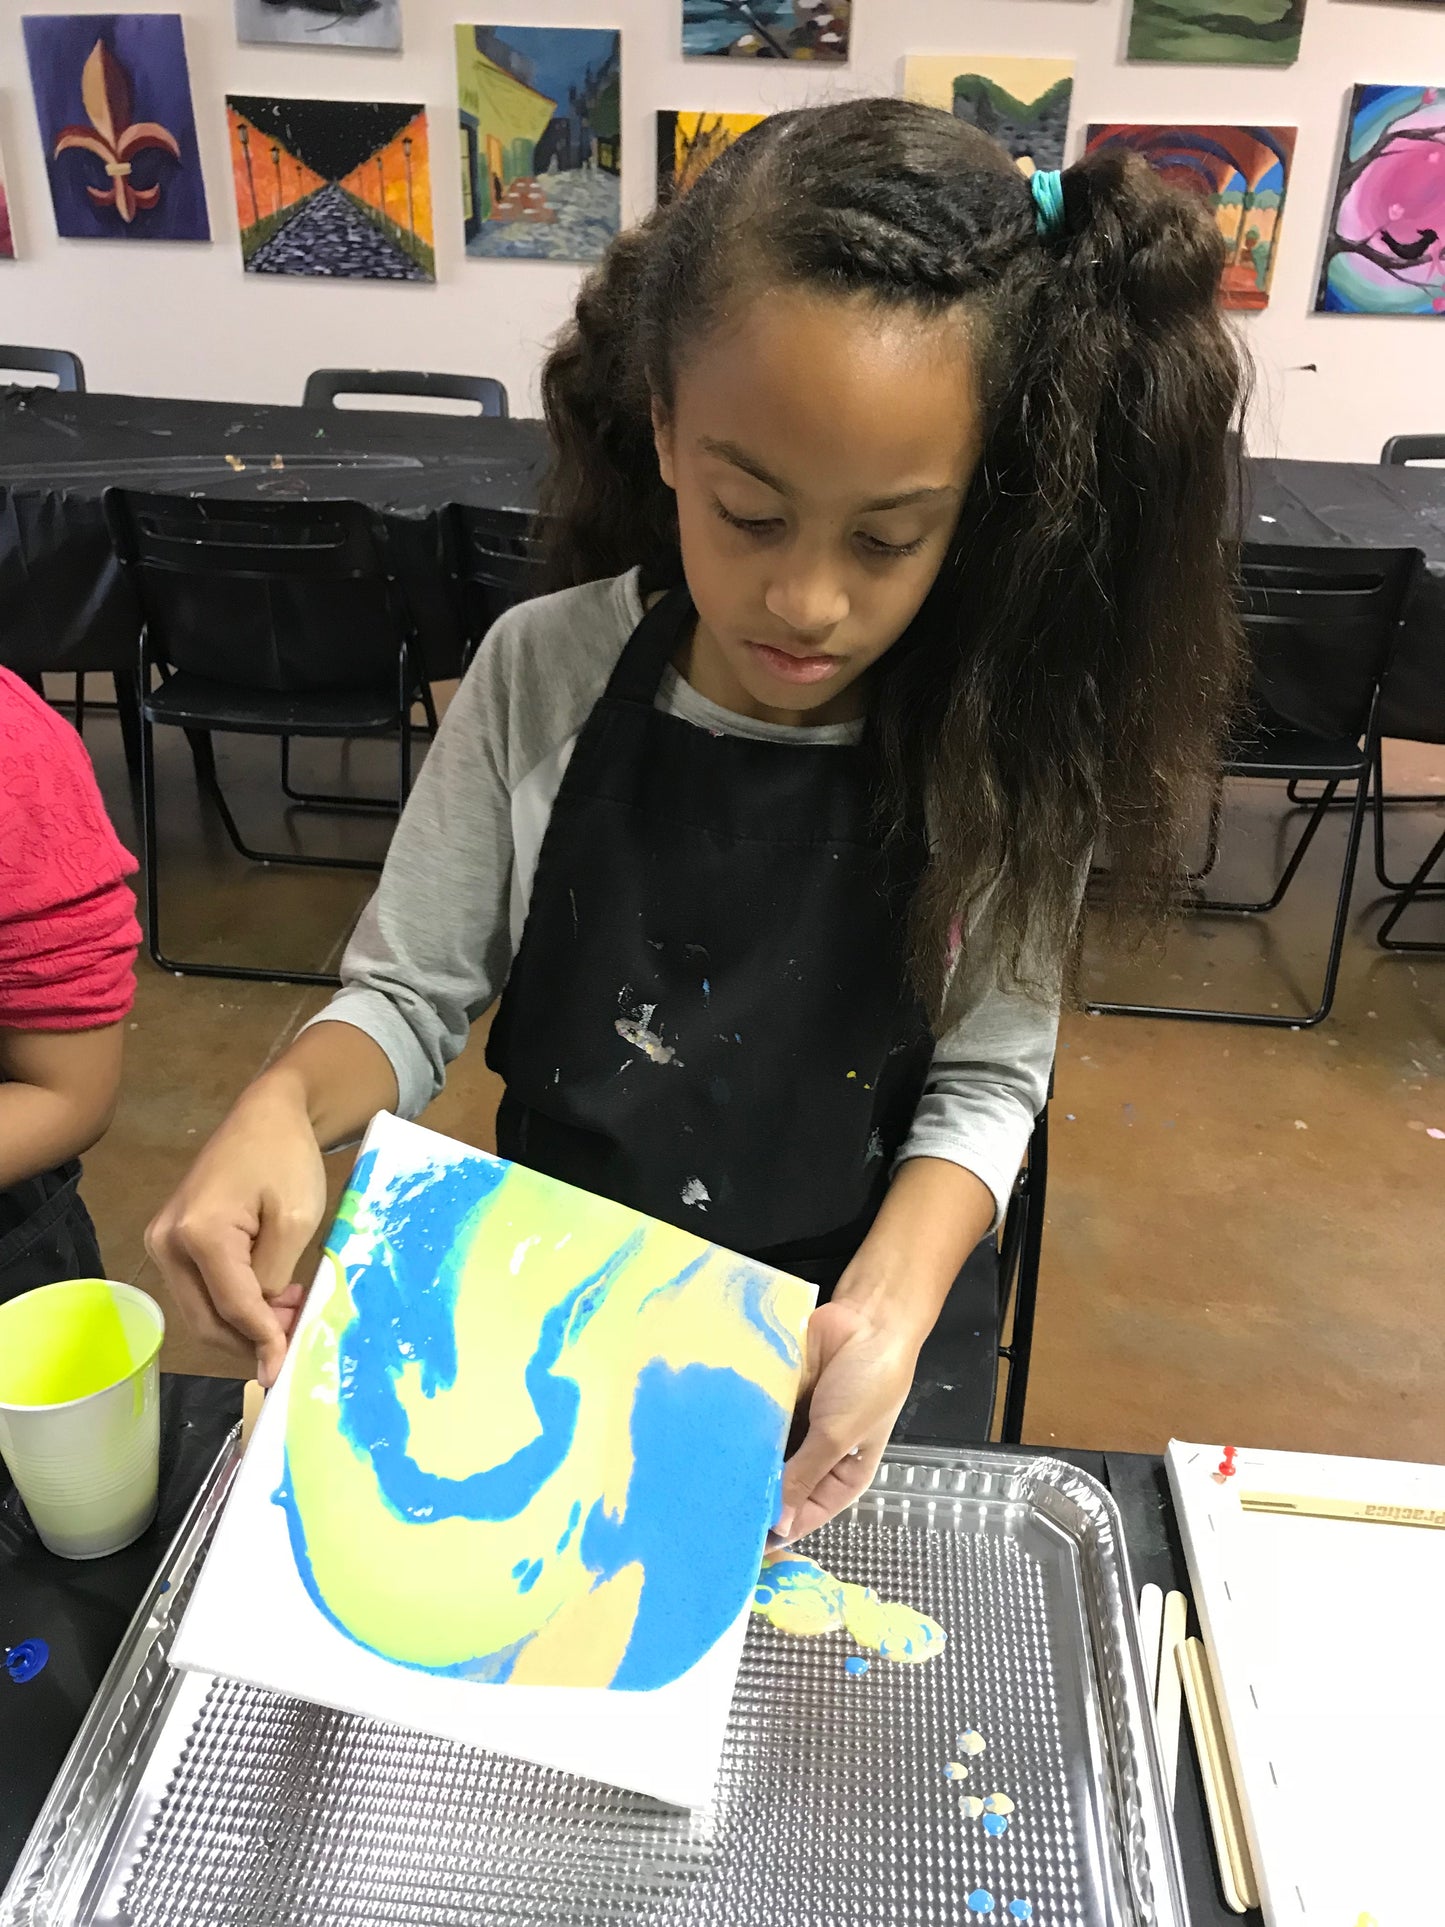 Wed, Jan 24th, 4-6p “Kids Paint: Acrylic Pour” Houston Public Painting Class